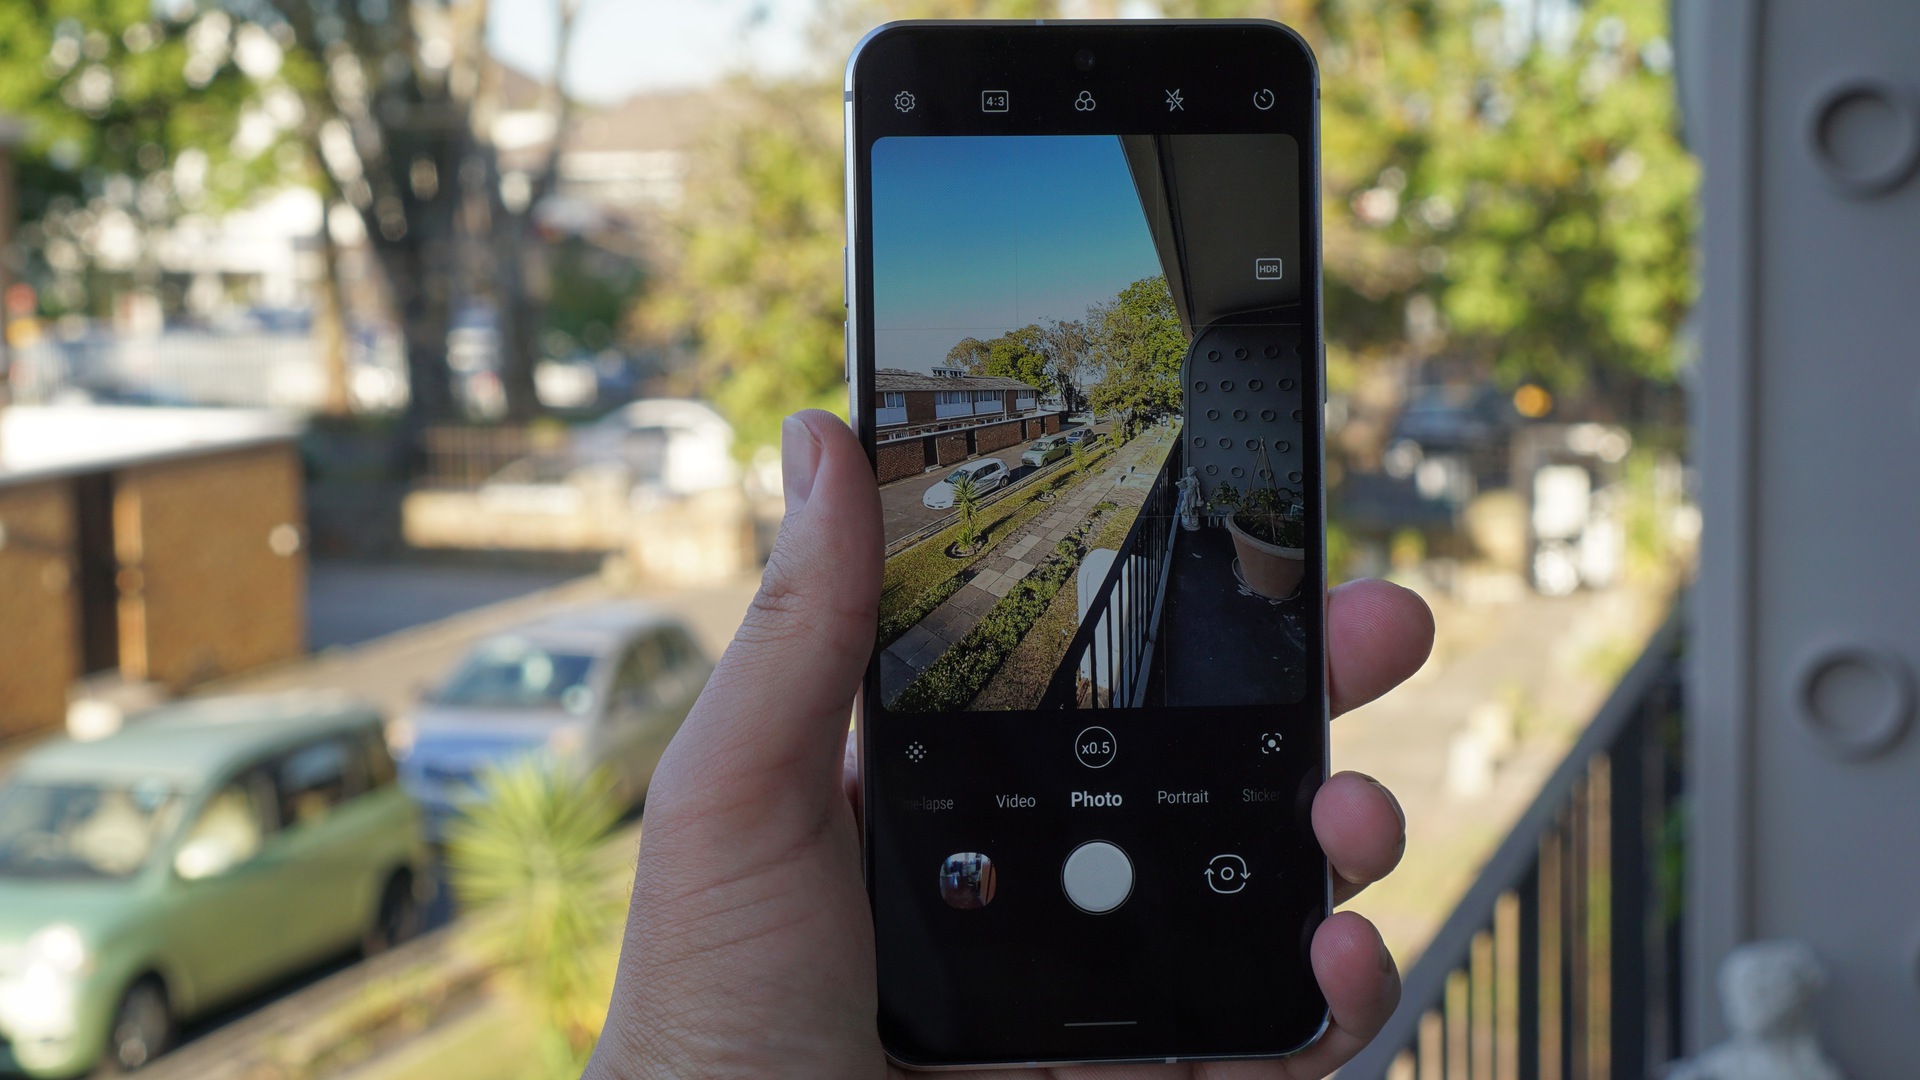 Heerlijk geef de bloem water progressief Ultra-wide camera guide: What separates the good phones from the best?